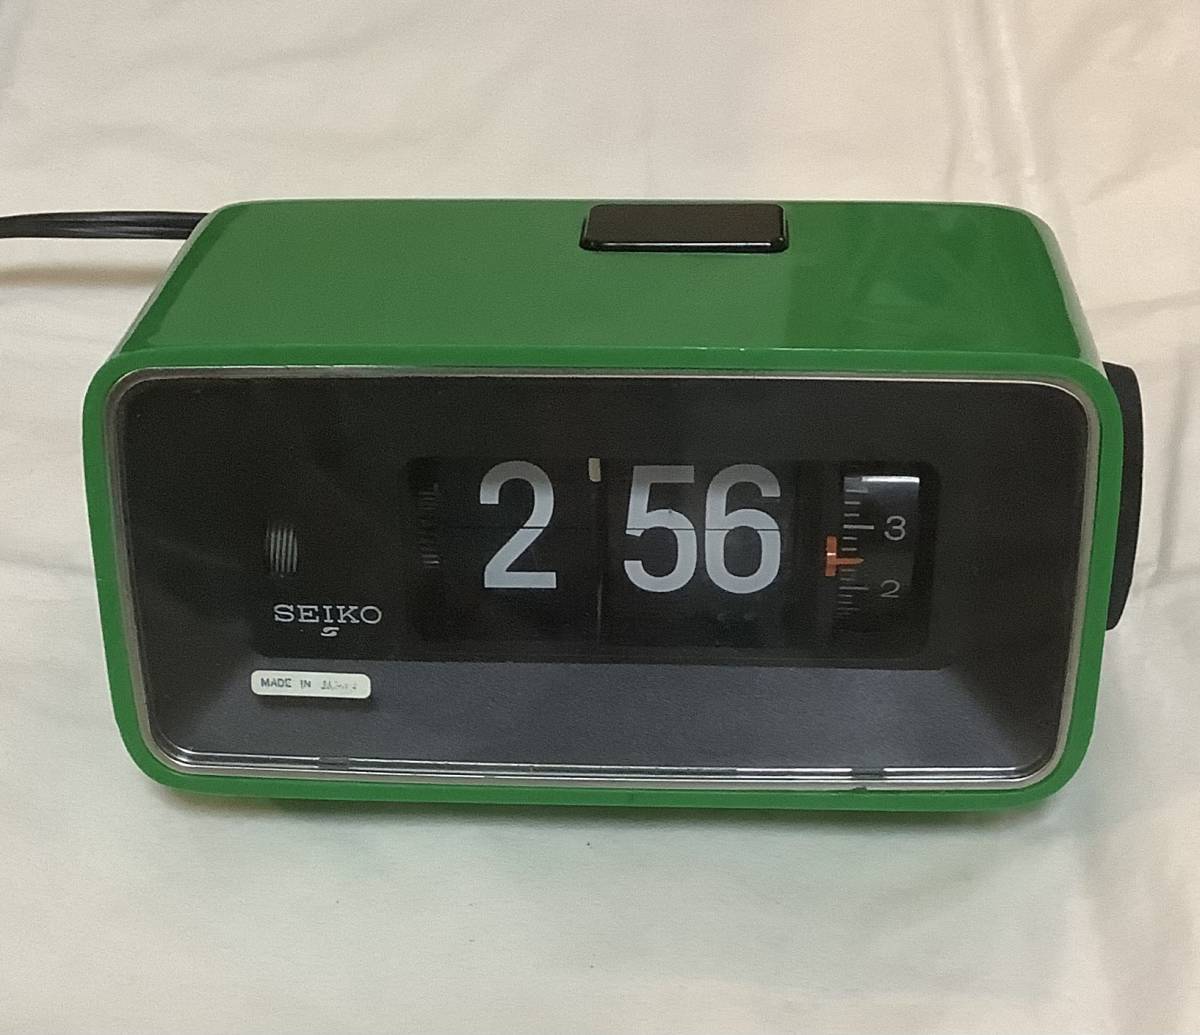 レトロ SEIKO セイコー アラーム付き パタパタ時計 緑 DP691Jの返品方法を画像付きで解説！返品の条件や注意点なども